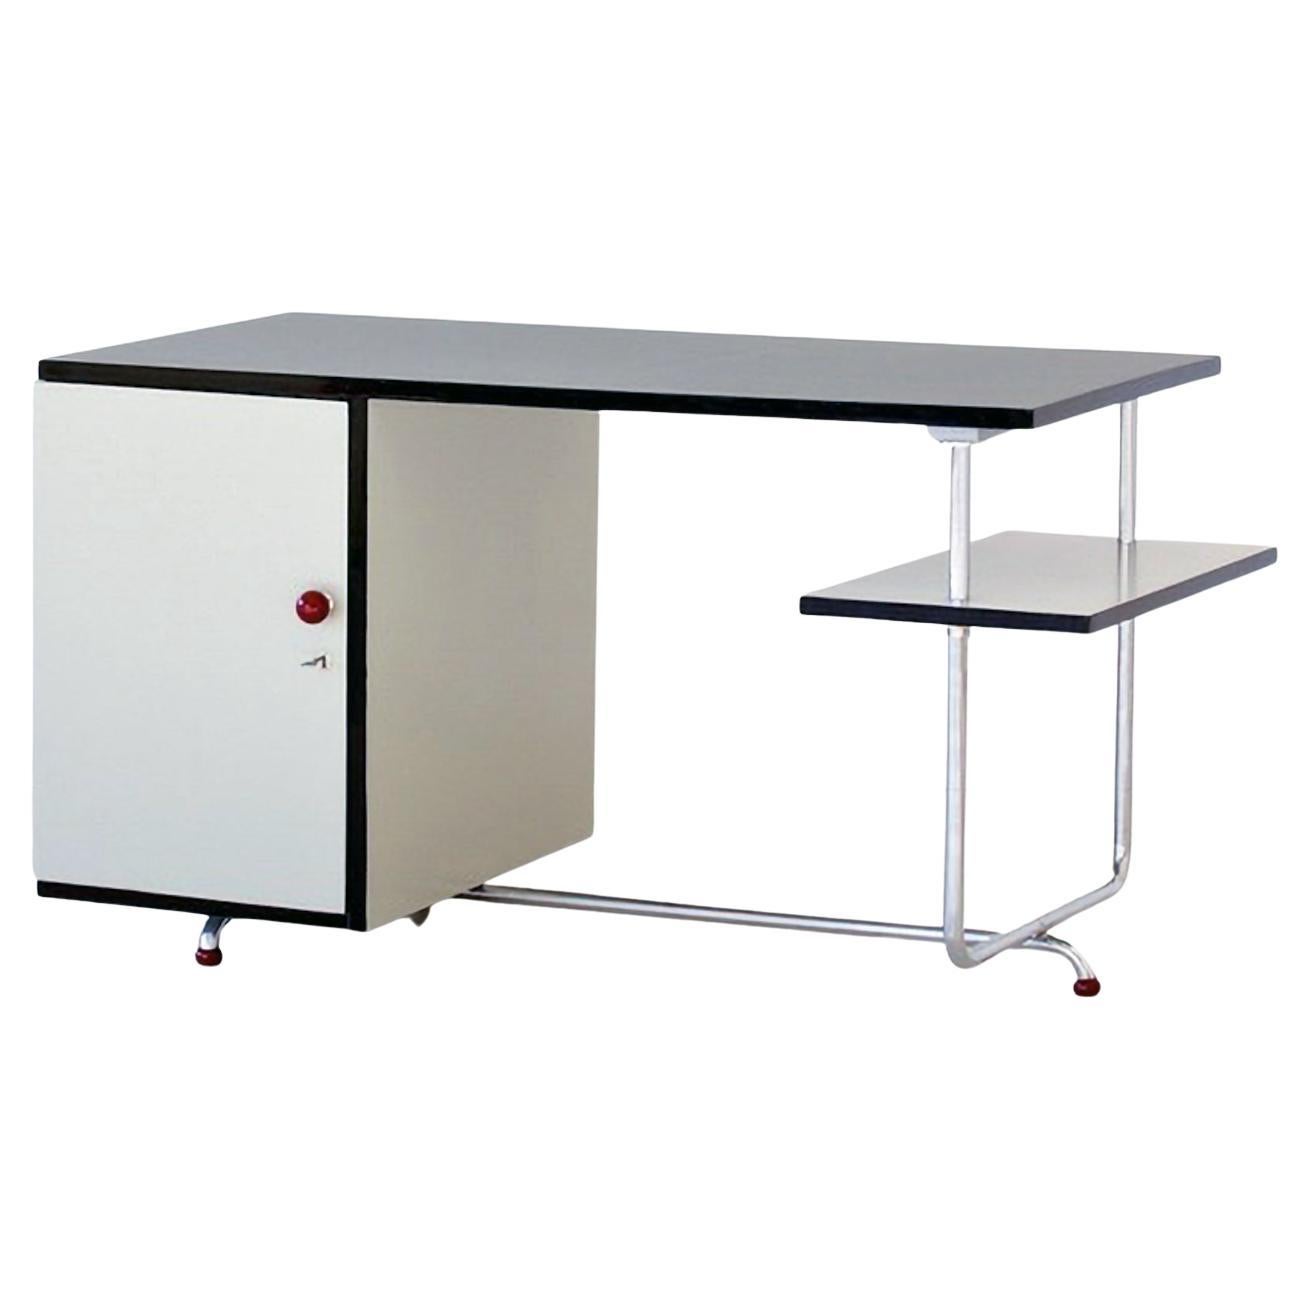 Modernist Tubular Steel Desk by Jindrich Halabala, Chromed Metal, Lacquered Wood For Sale